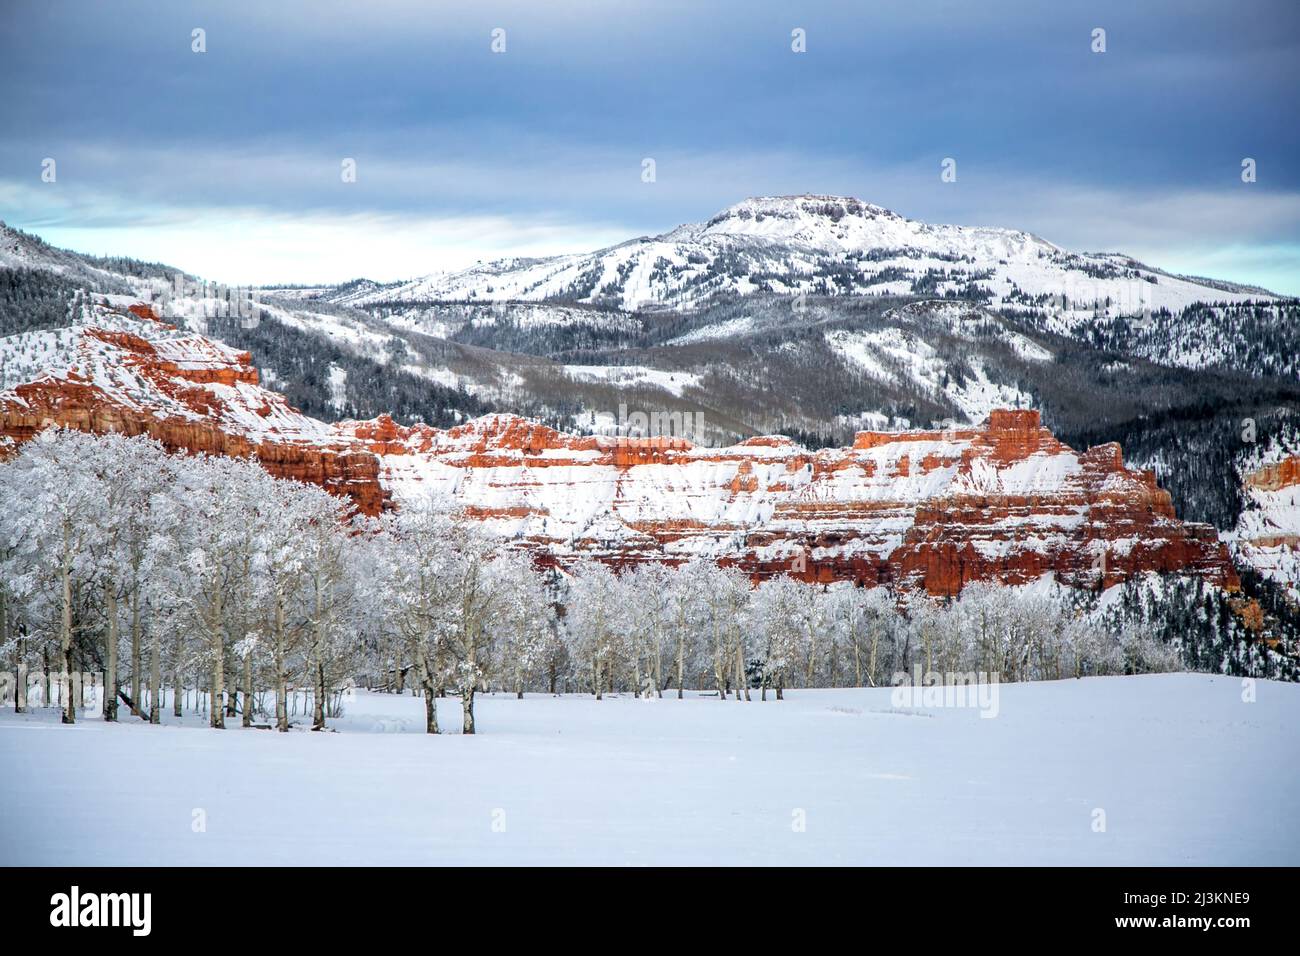 La neige couvre les montagnes et une forêt de tremble; Cedar City, Utah, États-Unis d'Amérique Banque D'Images